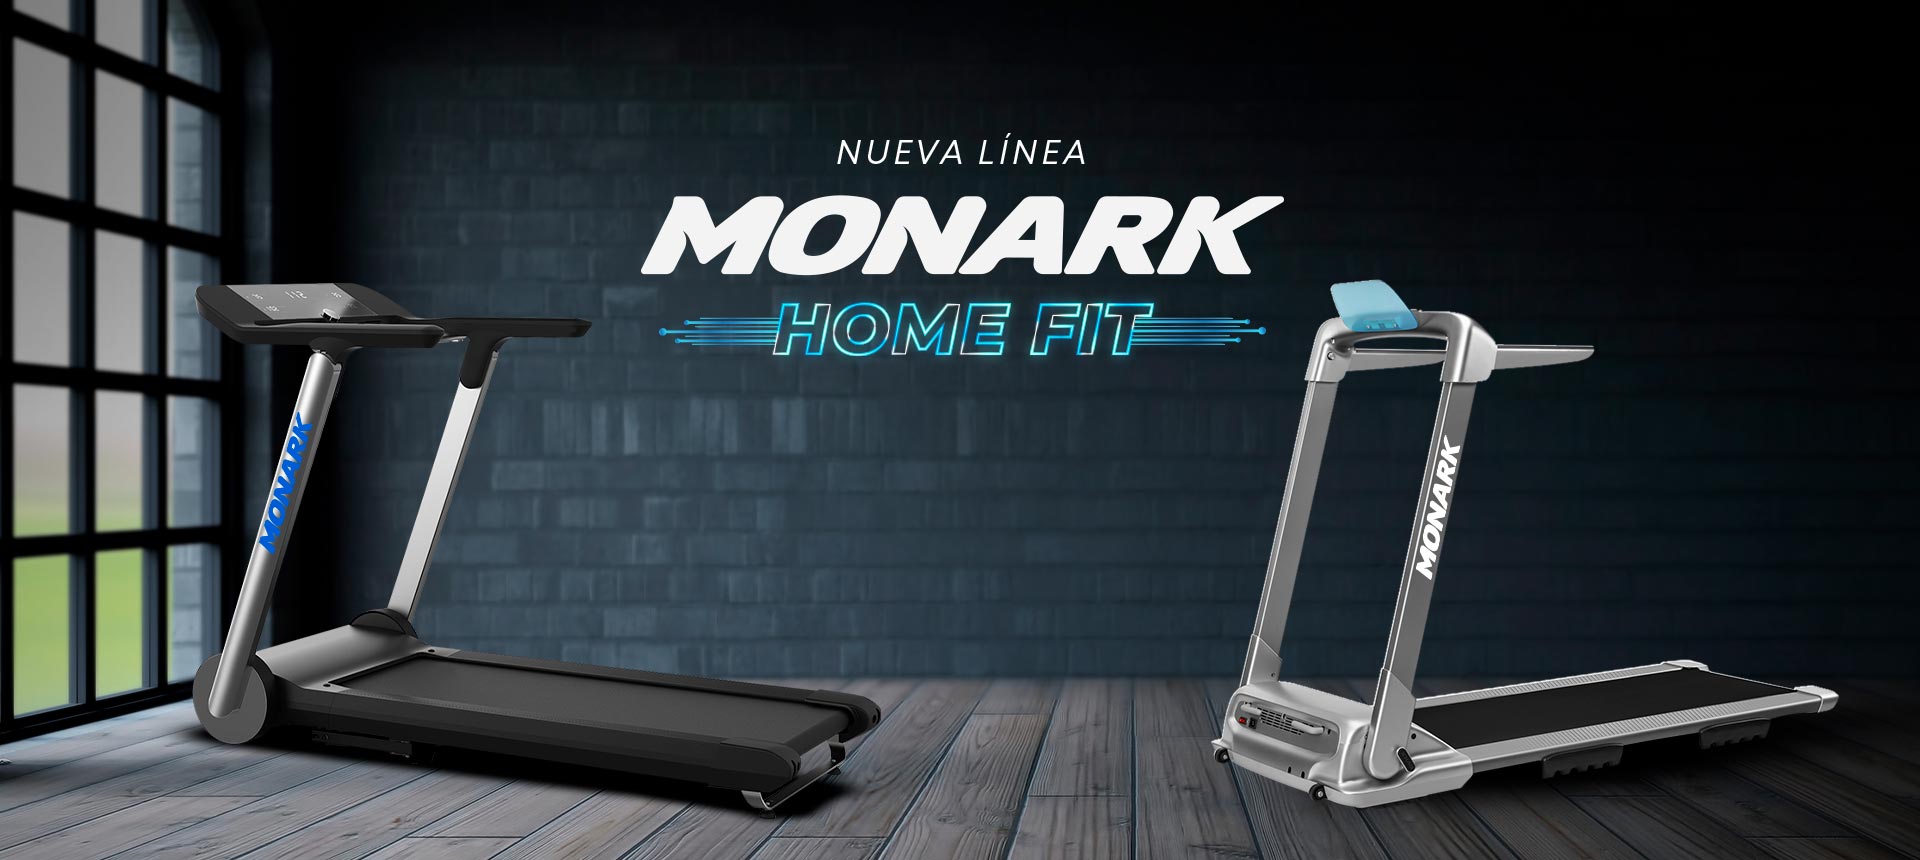 Monark lanza su línea Home Fit para entrenar en hogares con espacio limitado